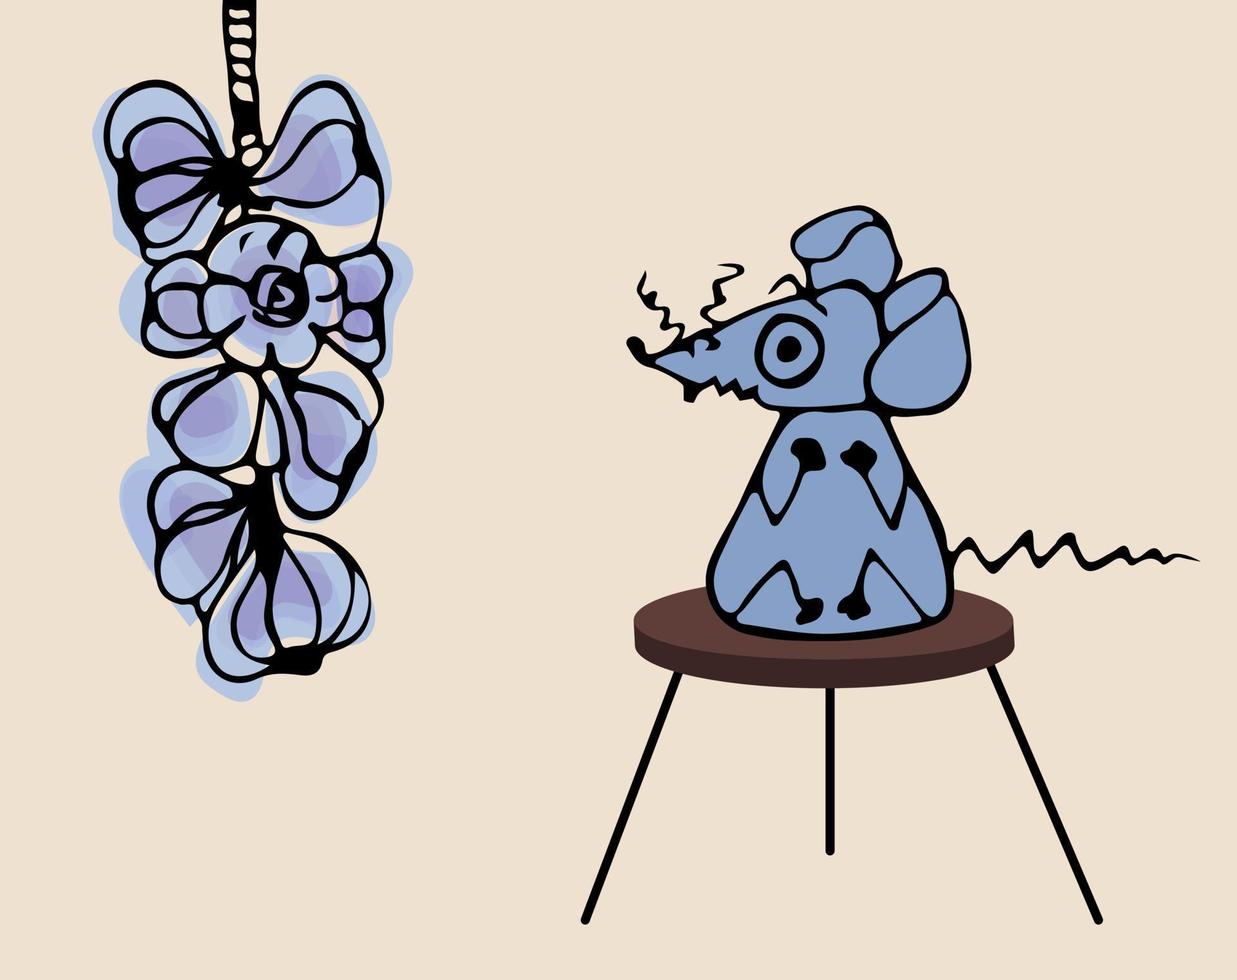 de grijs muis zit Aan een stoel en is bang van knoflook. emotioneel baby illustratie in kleur tekening stijl vector